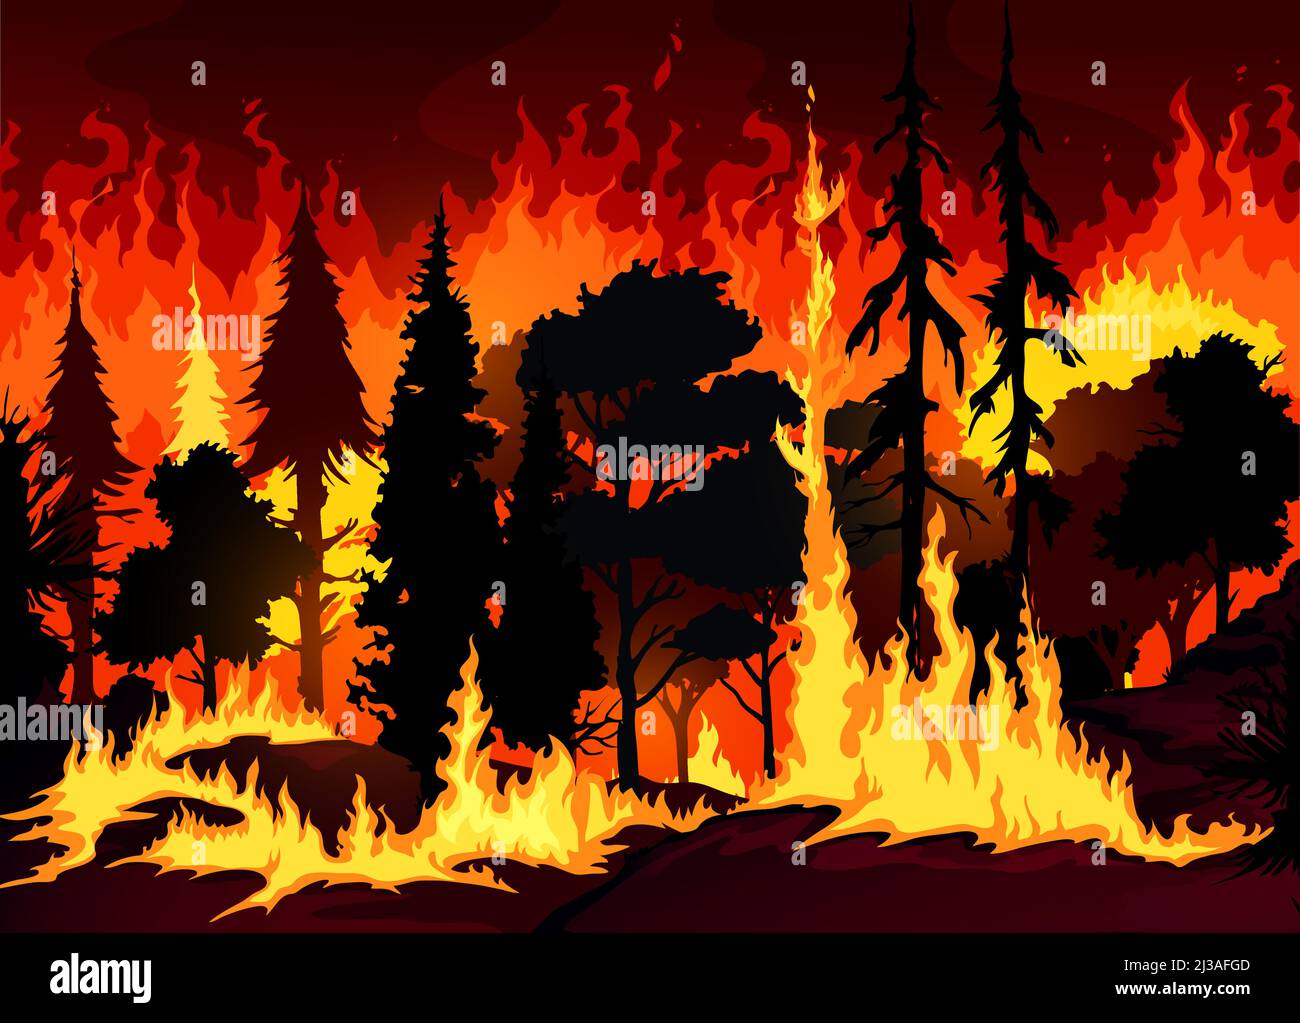 Forêt feu de forêt fond de catastrophe avec des arbres en feu et de l'herbe. Danger feu en toile de fond vecteur forestier, catastrophe écologique ou fond cataclysme avec feu de brousse, silhouettes d'arbres flamboyantes Illustration de Vecteur